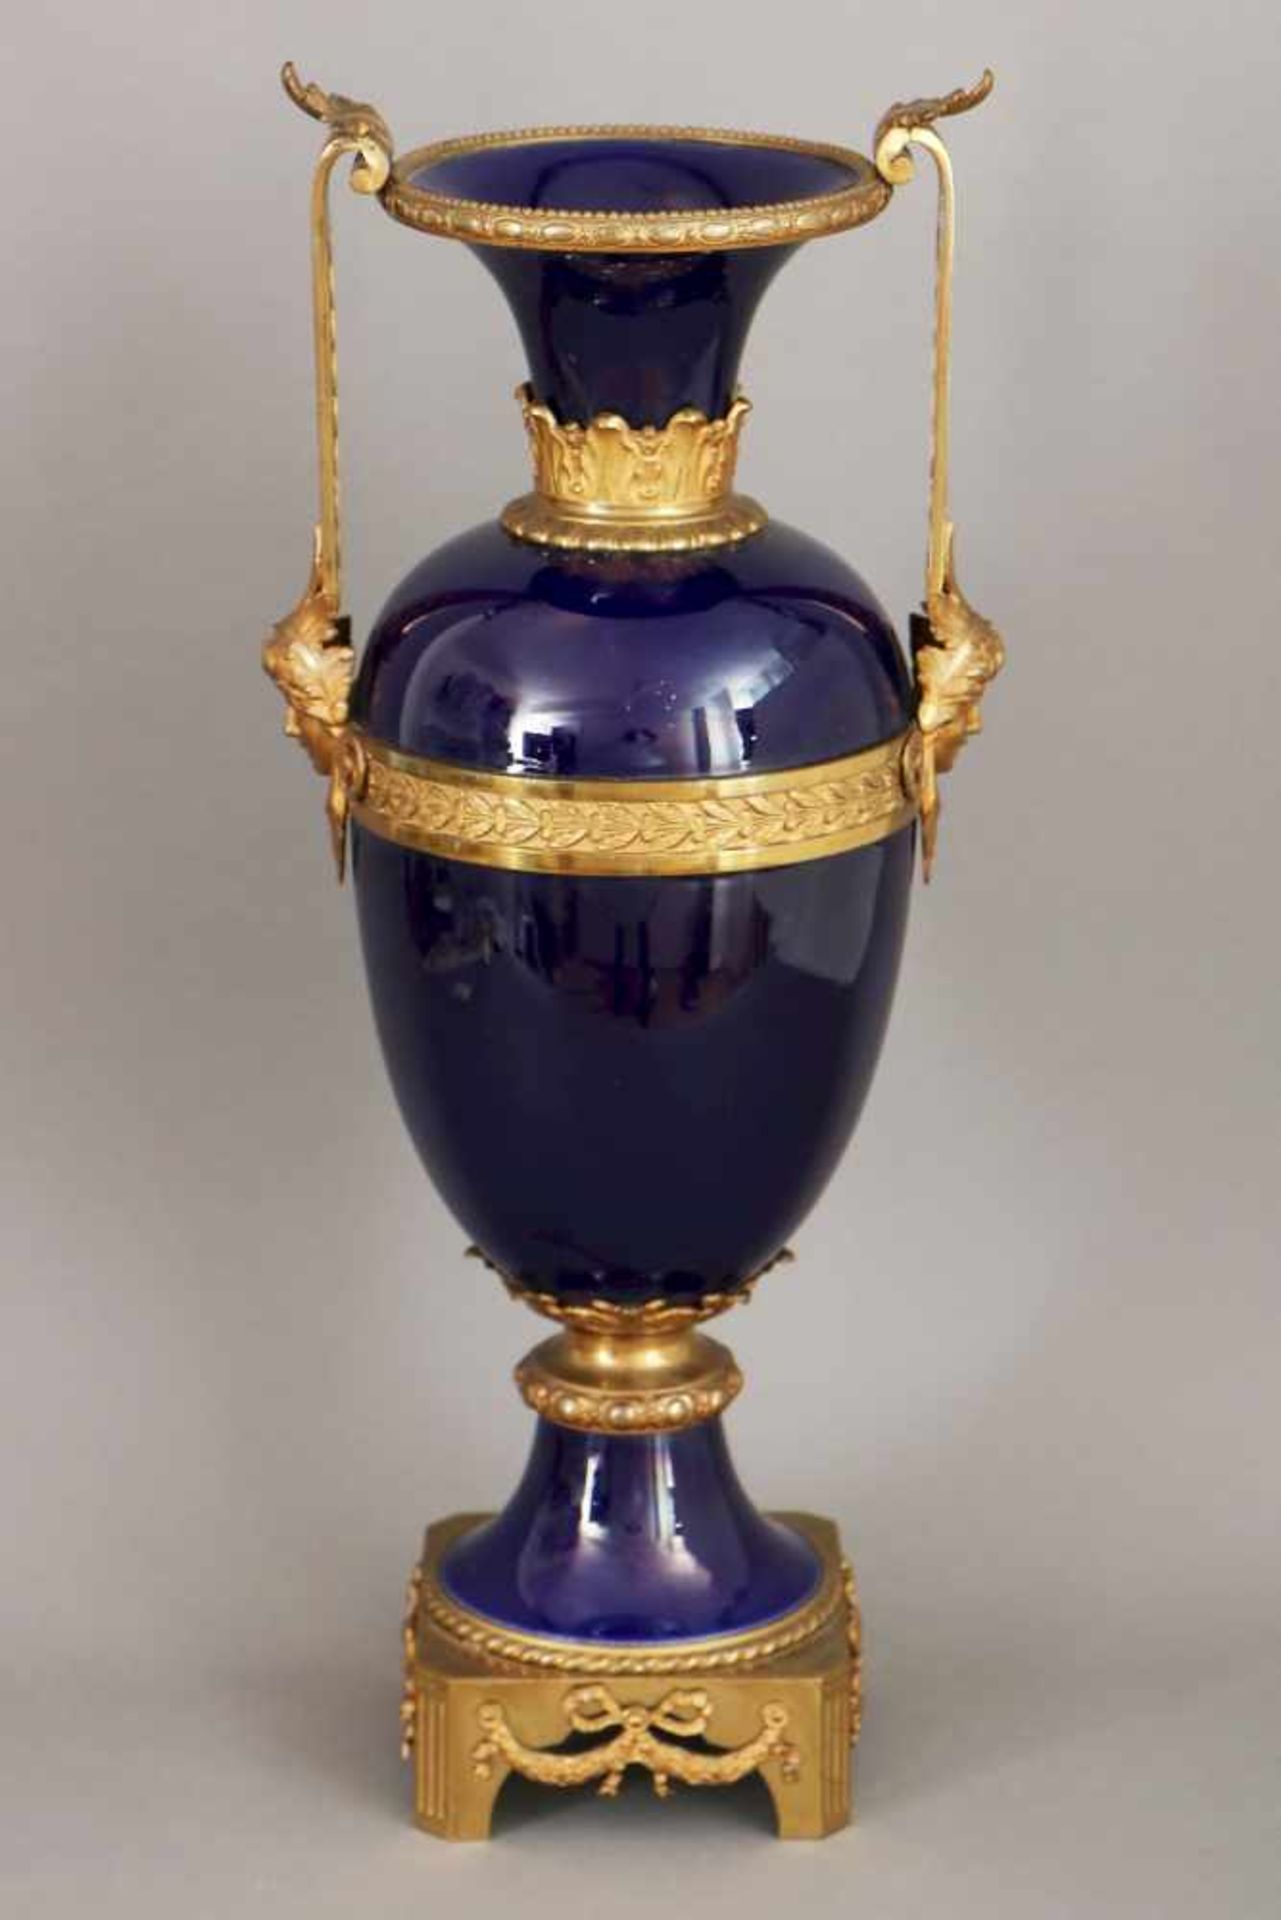 Amphorenvase im Stile des EmpirePorzellan, wohl um 1920, kobaltblau glasierter, ovoider Korpus mit